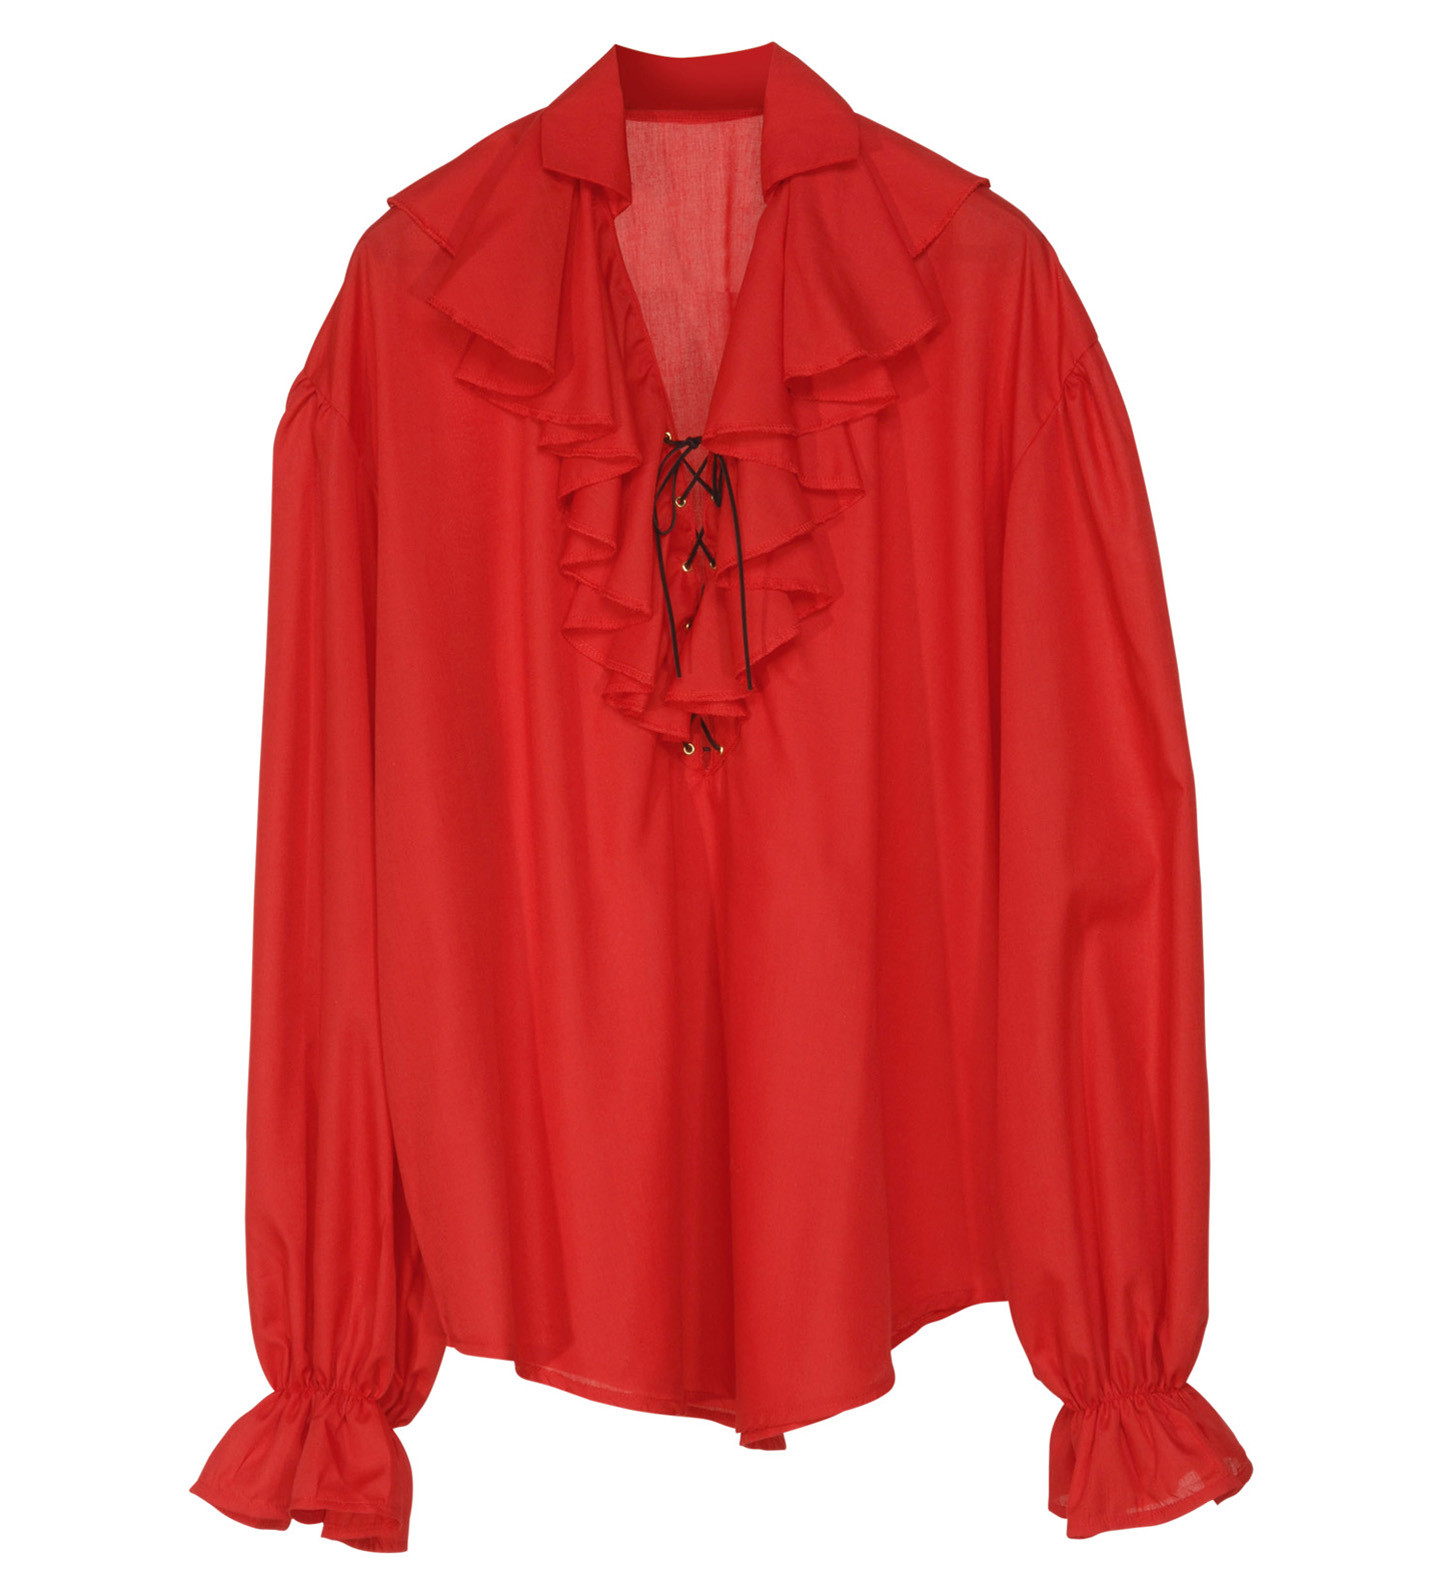 Accessorio Costume Pirata, Rinascimento, Camicia Rossa *20040